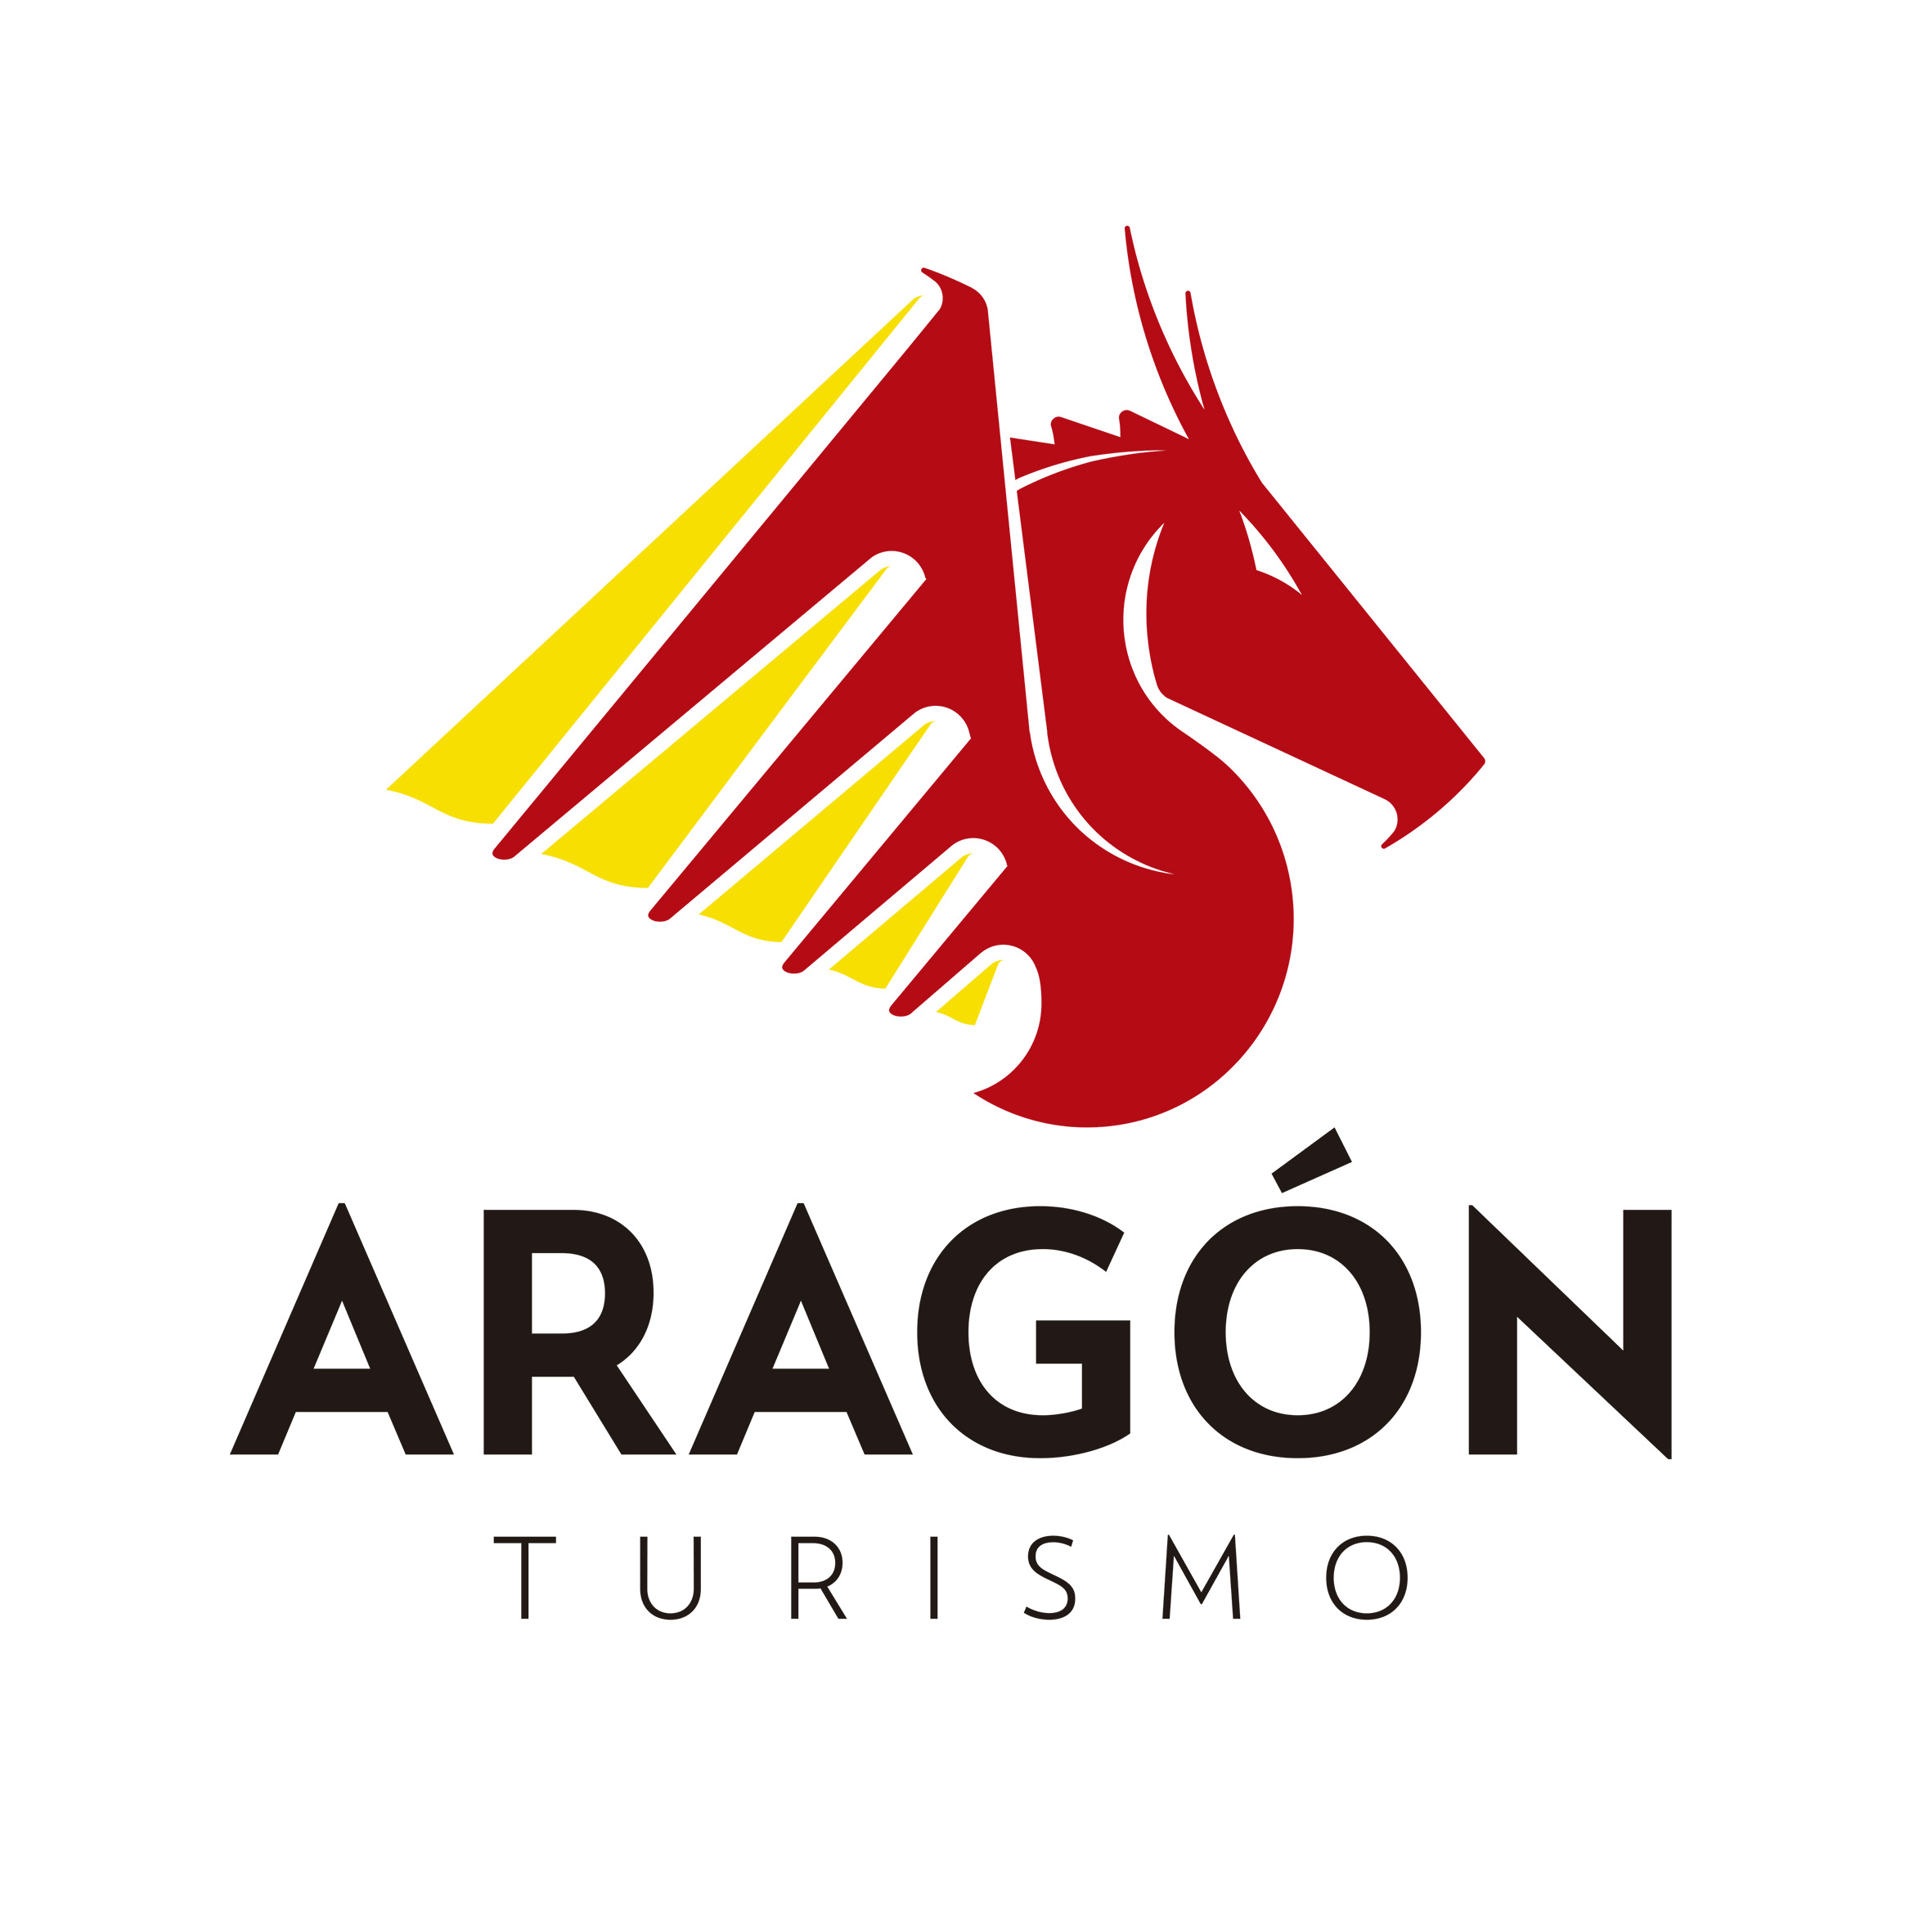 Turismo de Aragón